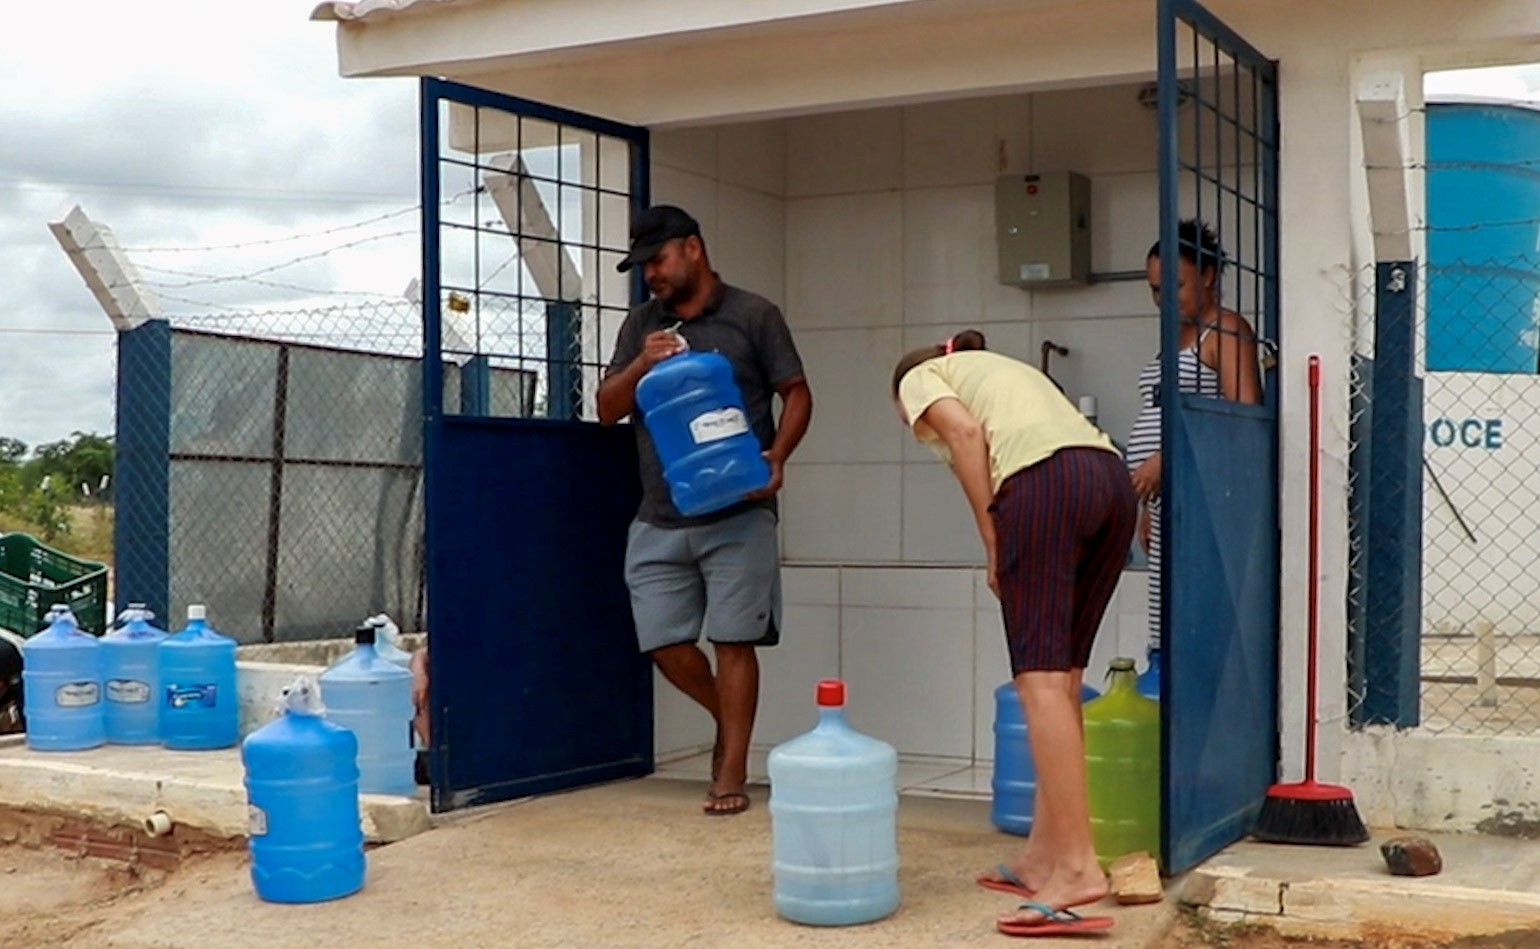 Sistema de dessalinização trata água salobra para garantir água para consumo humano: melhoria da saúde na comunidade (Foto: Irpaa)